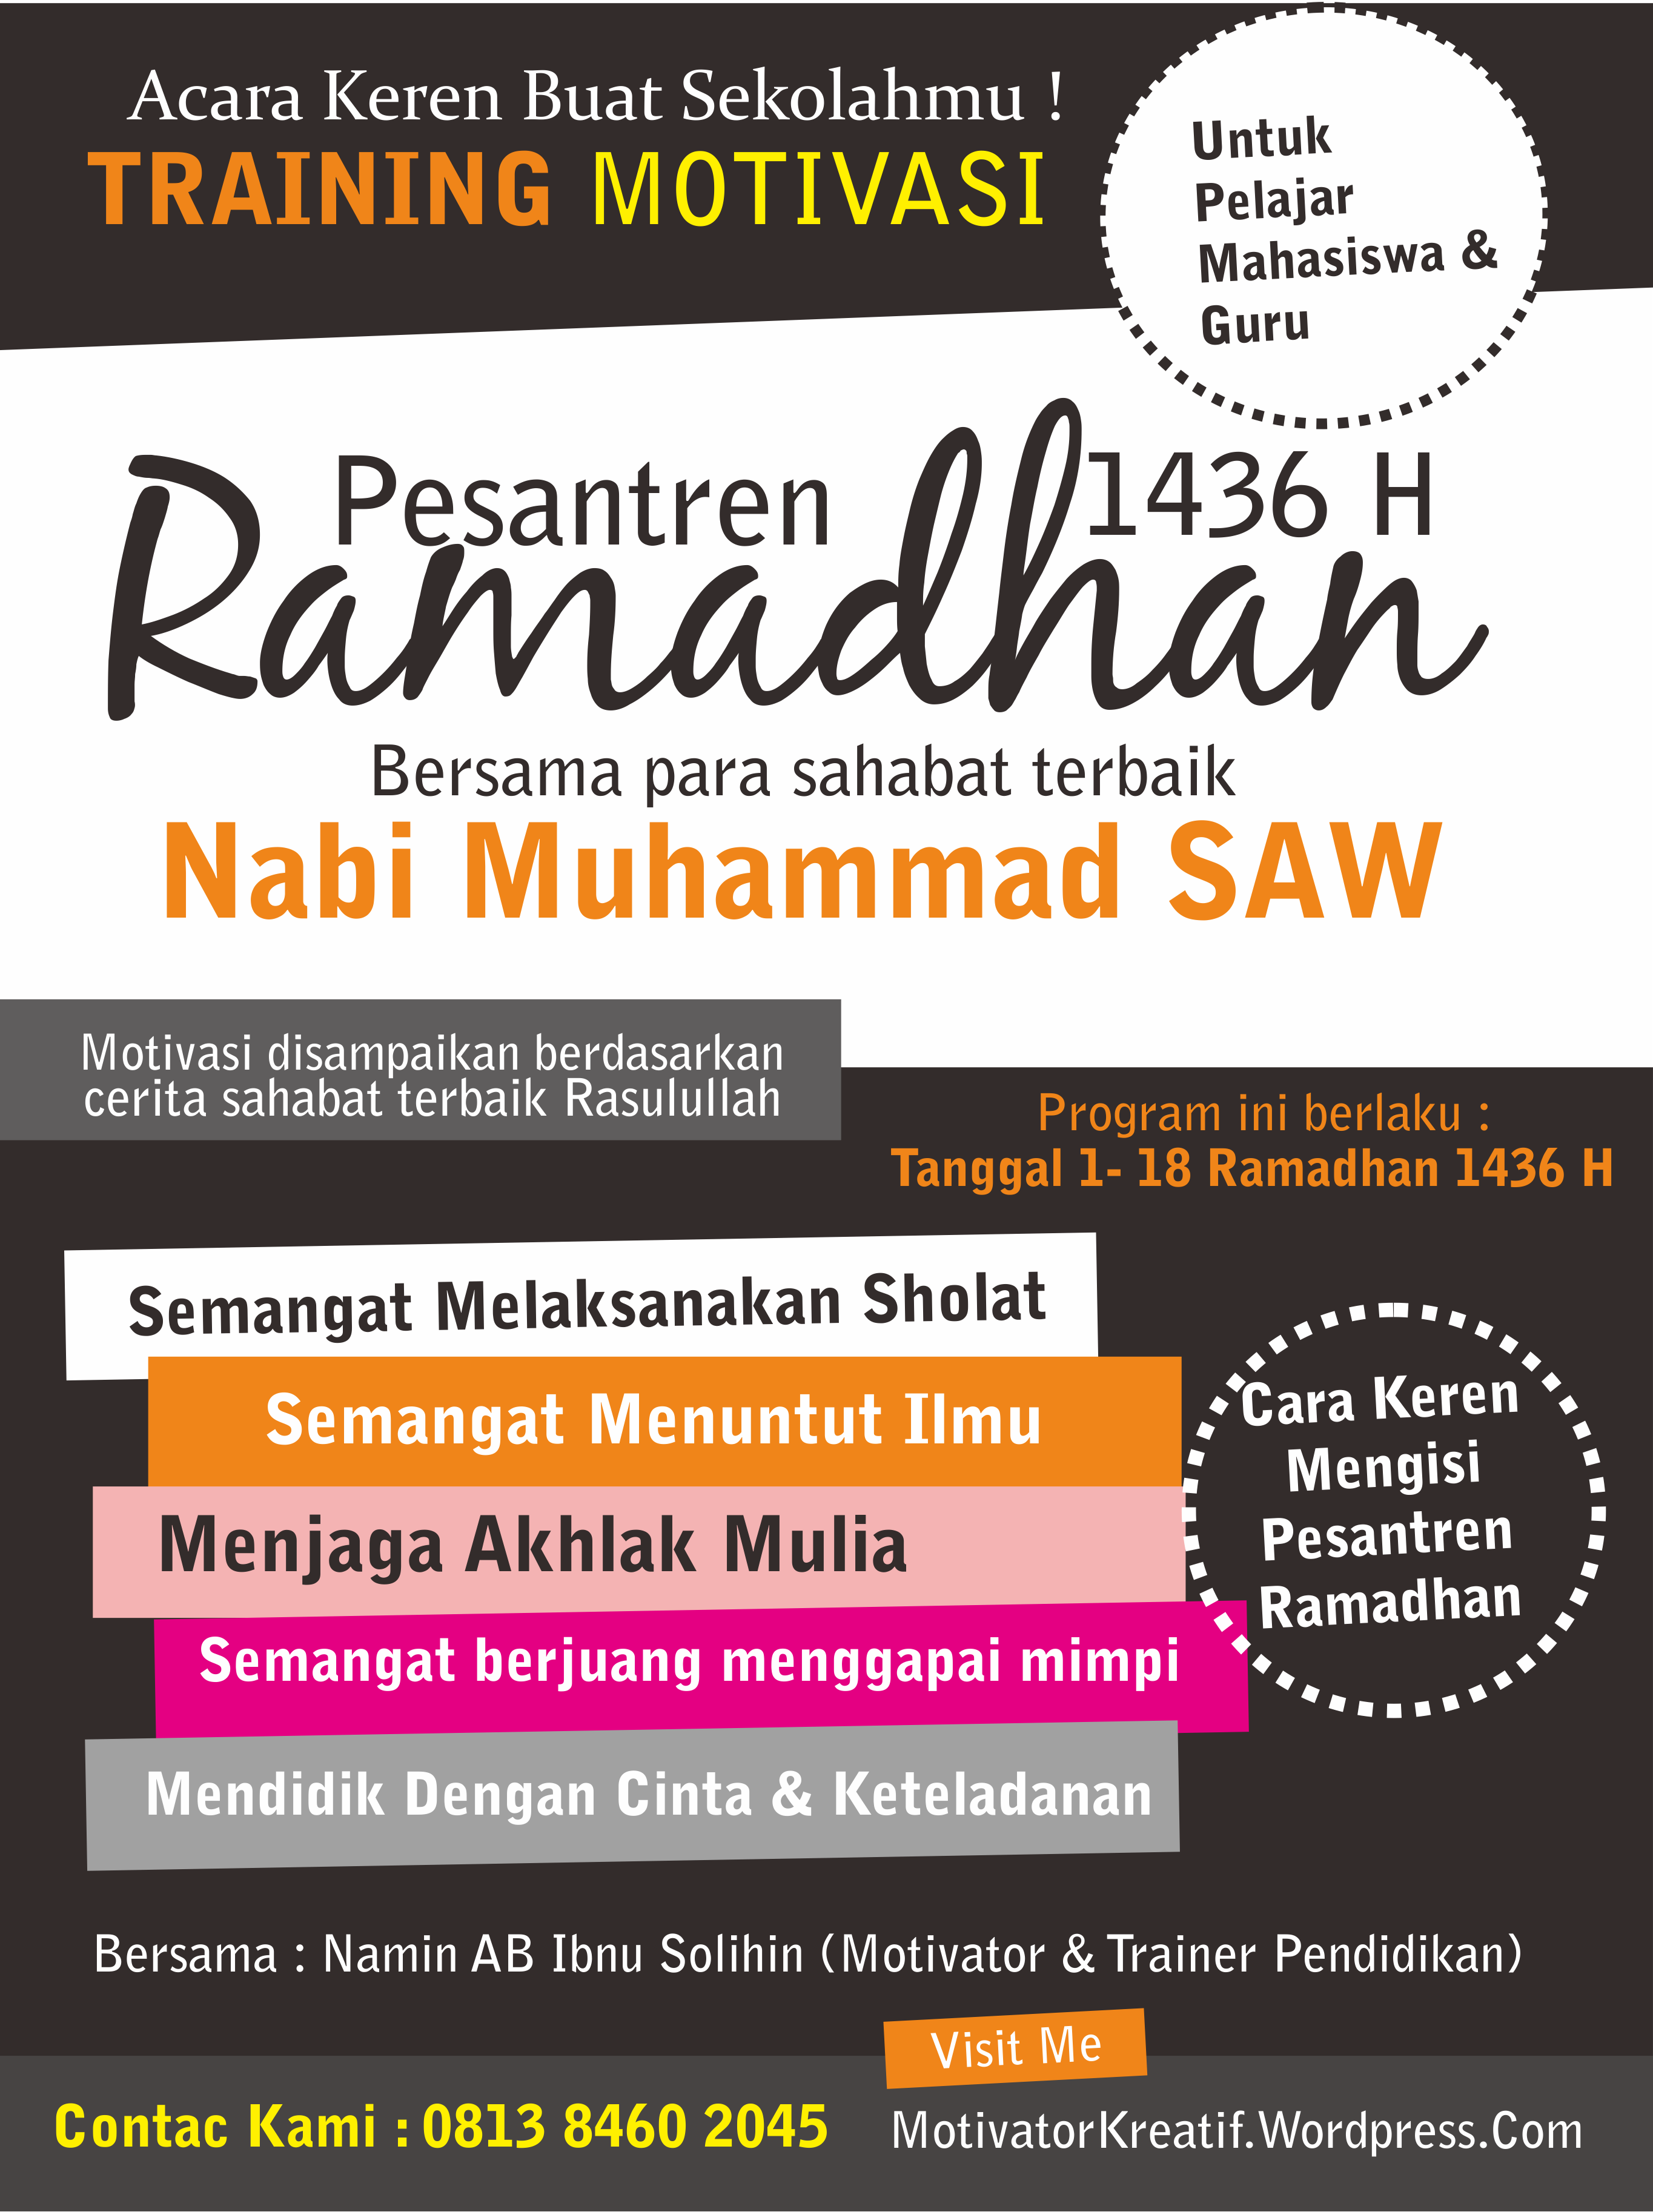 Training Motivasi Pesantren Ramadhan 2015  Motivator 